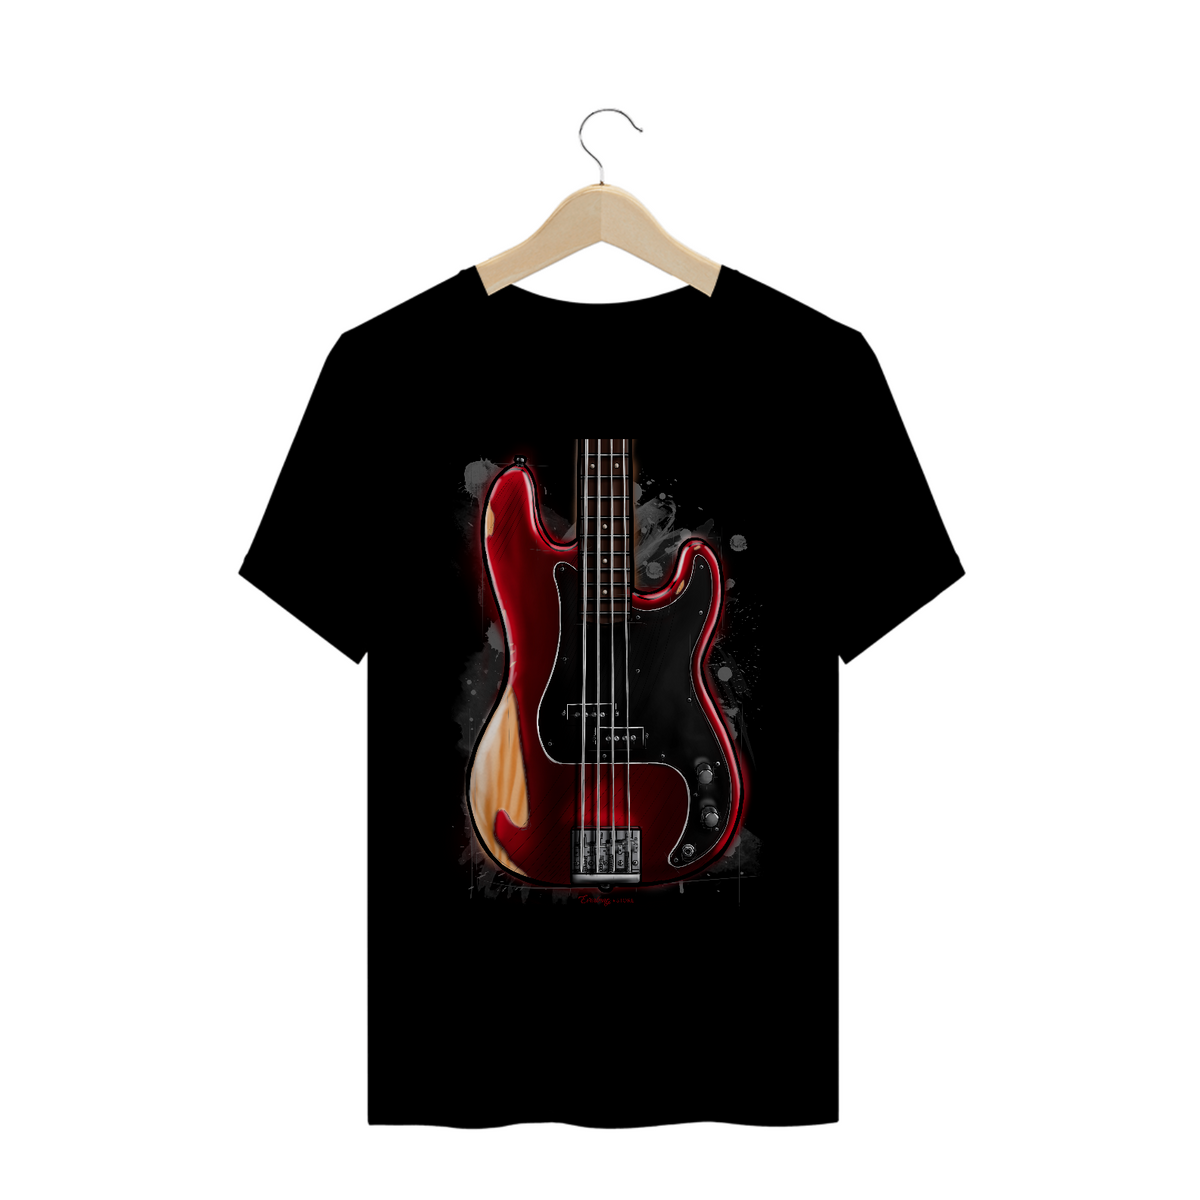 Nome do produto: Camiseta - Fender Nate Mendel Precision Bass